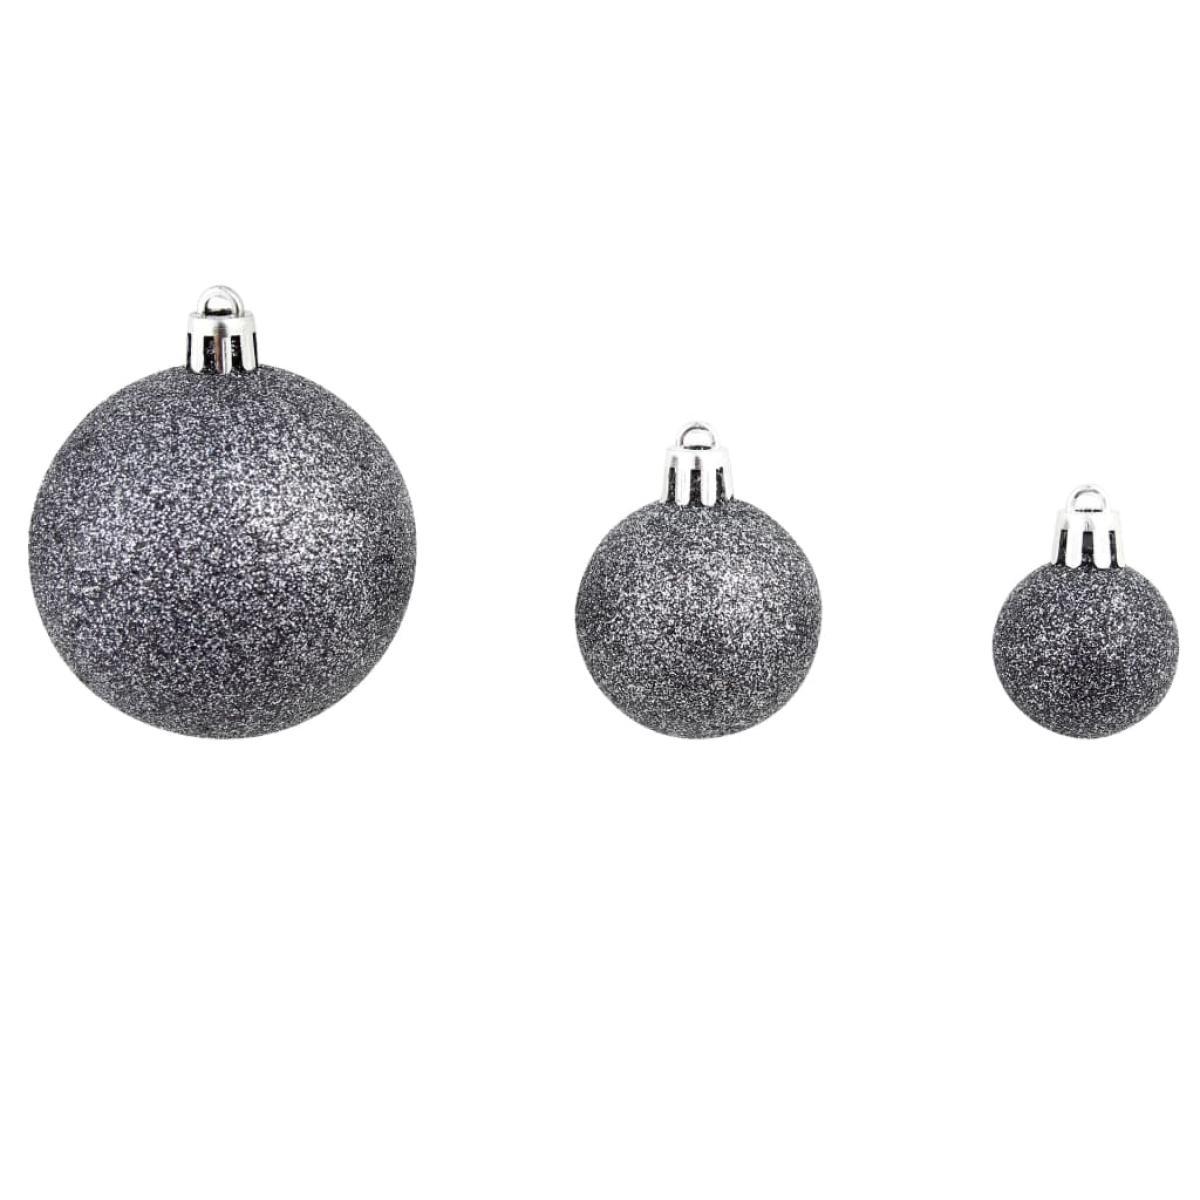 Lote de bolas de Navidad 100 unidades blanco/gris 3/4/6 cm